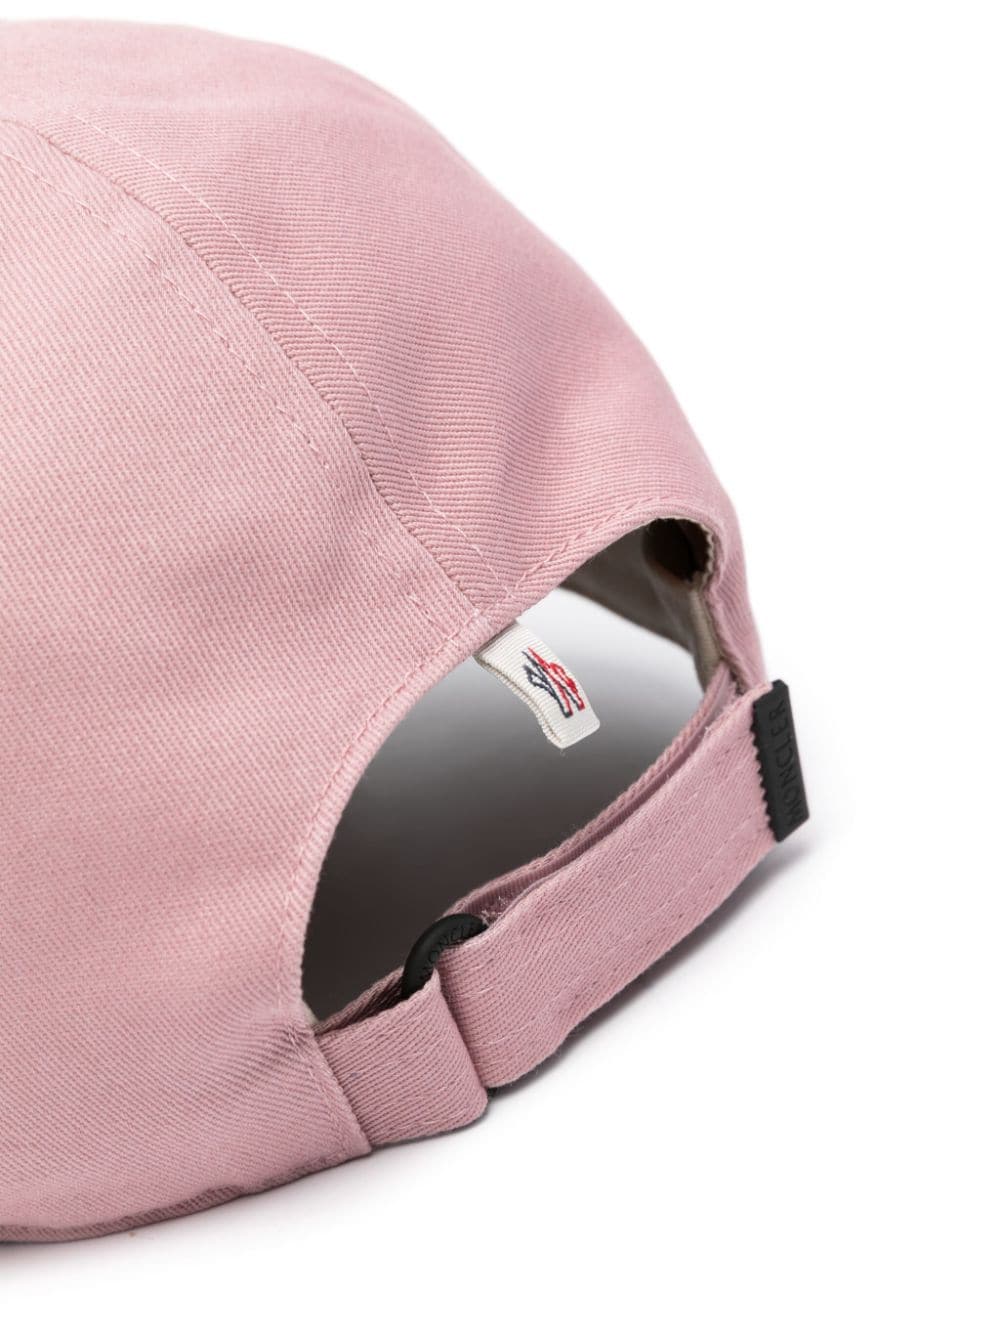 Cappello rosa in cotone con applicazione logo<br><br><br>